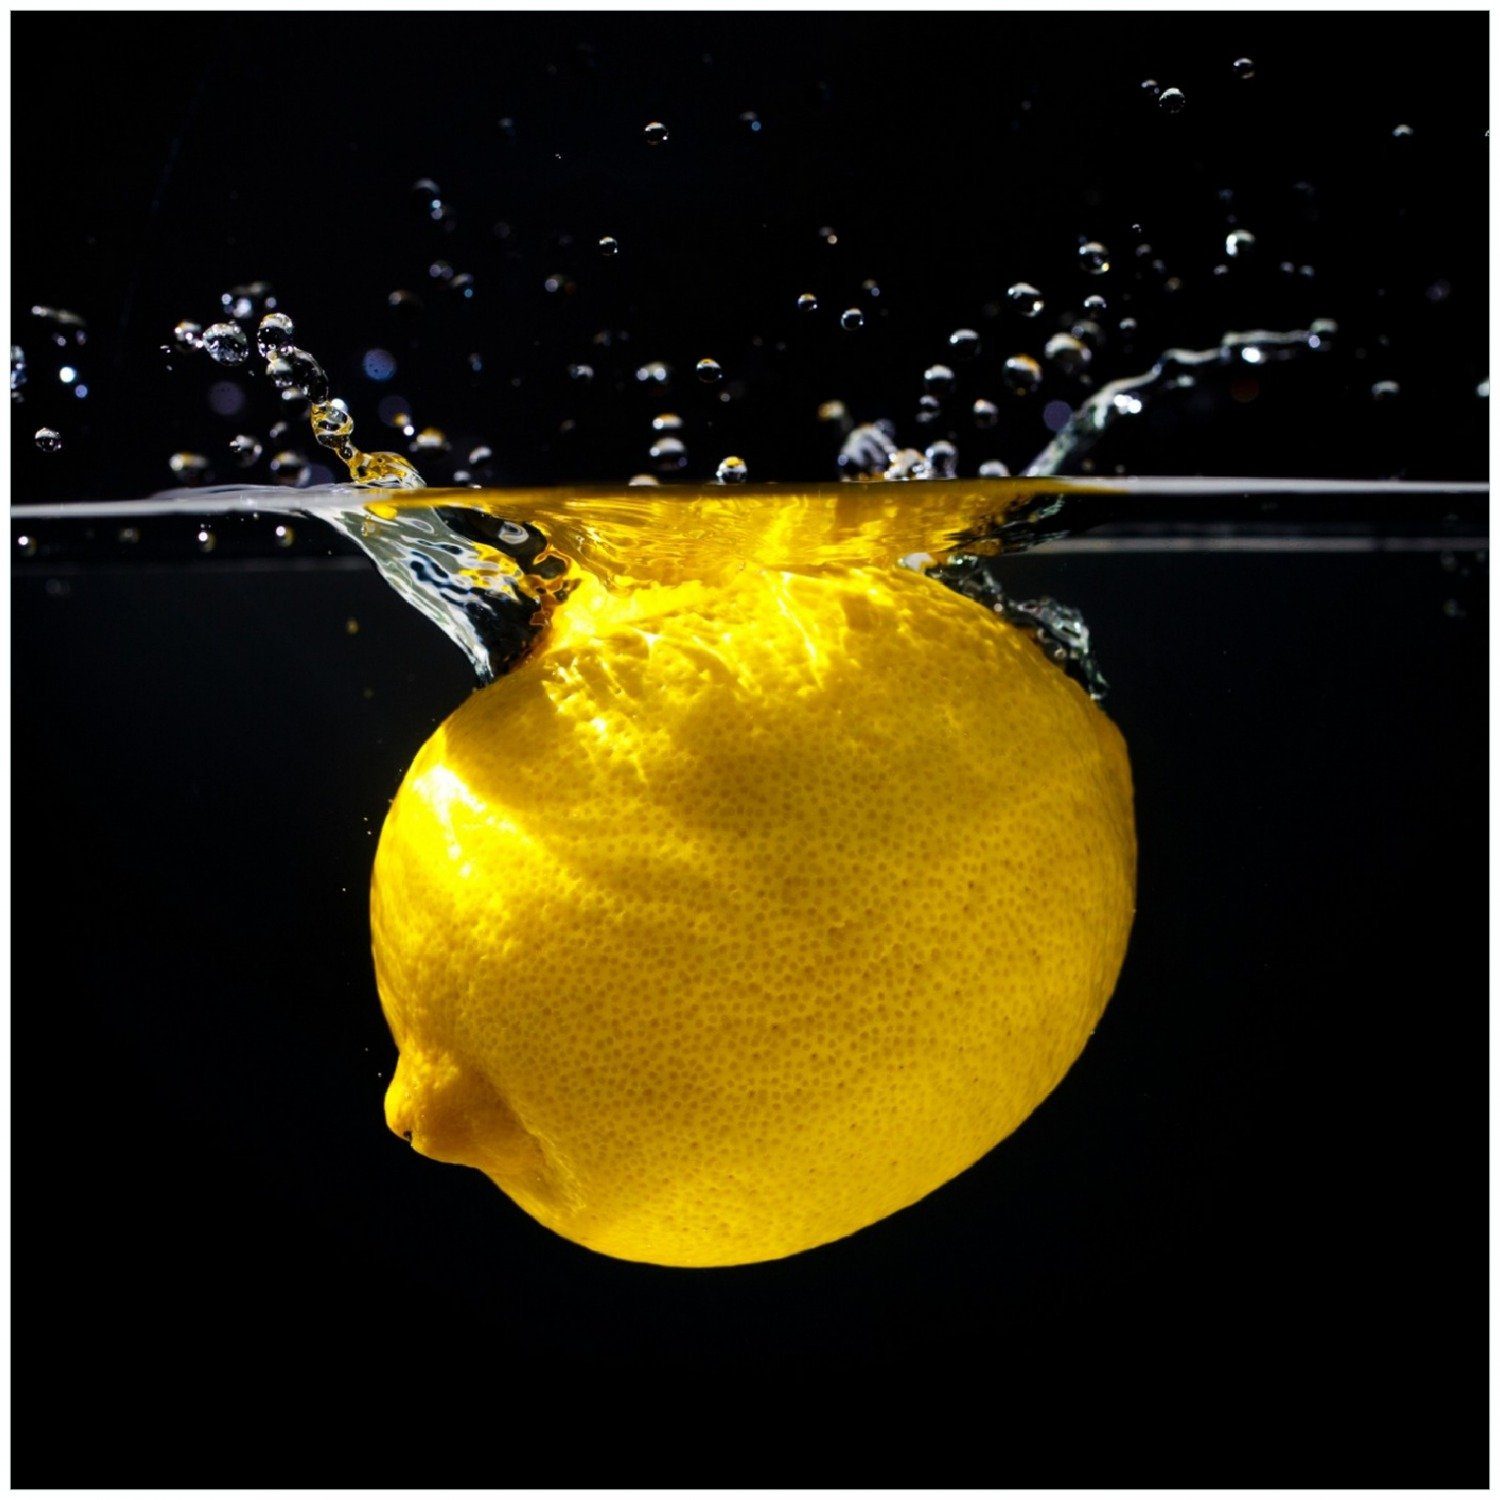 für Frisches Wasser Wallario die - im Zitrone Memoboard Küche Obst